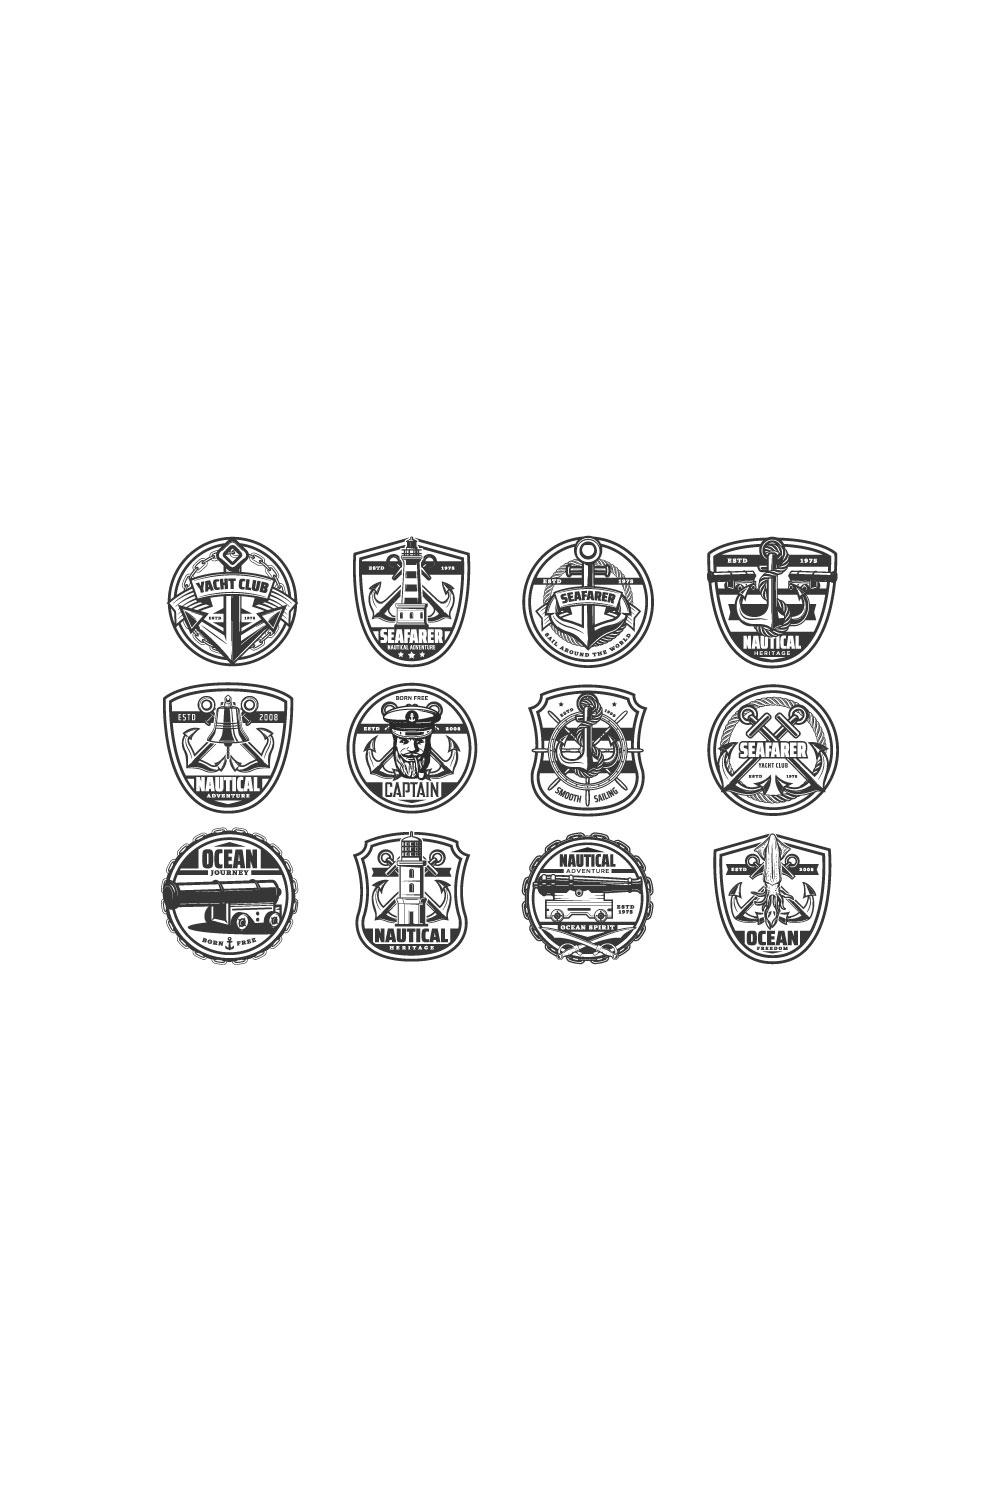 Some sea sailor vector icons collection.